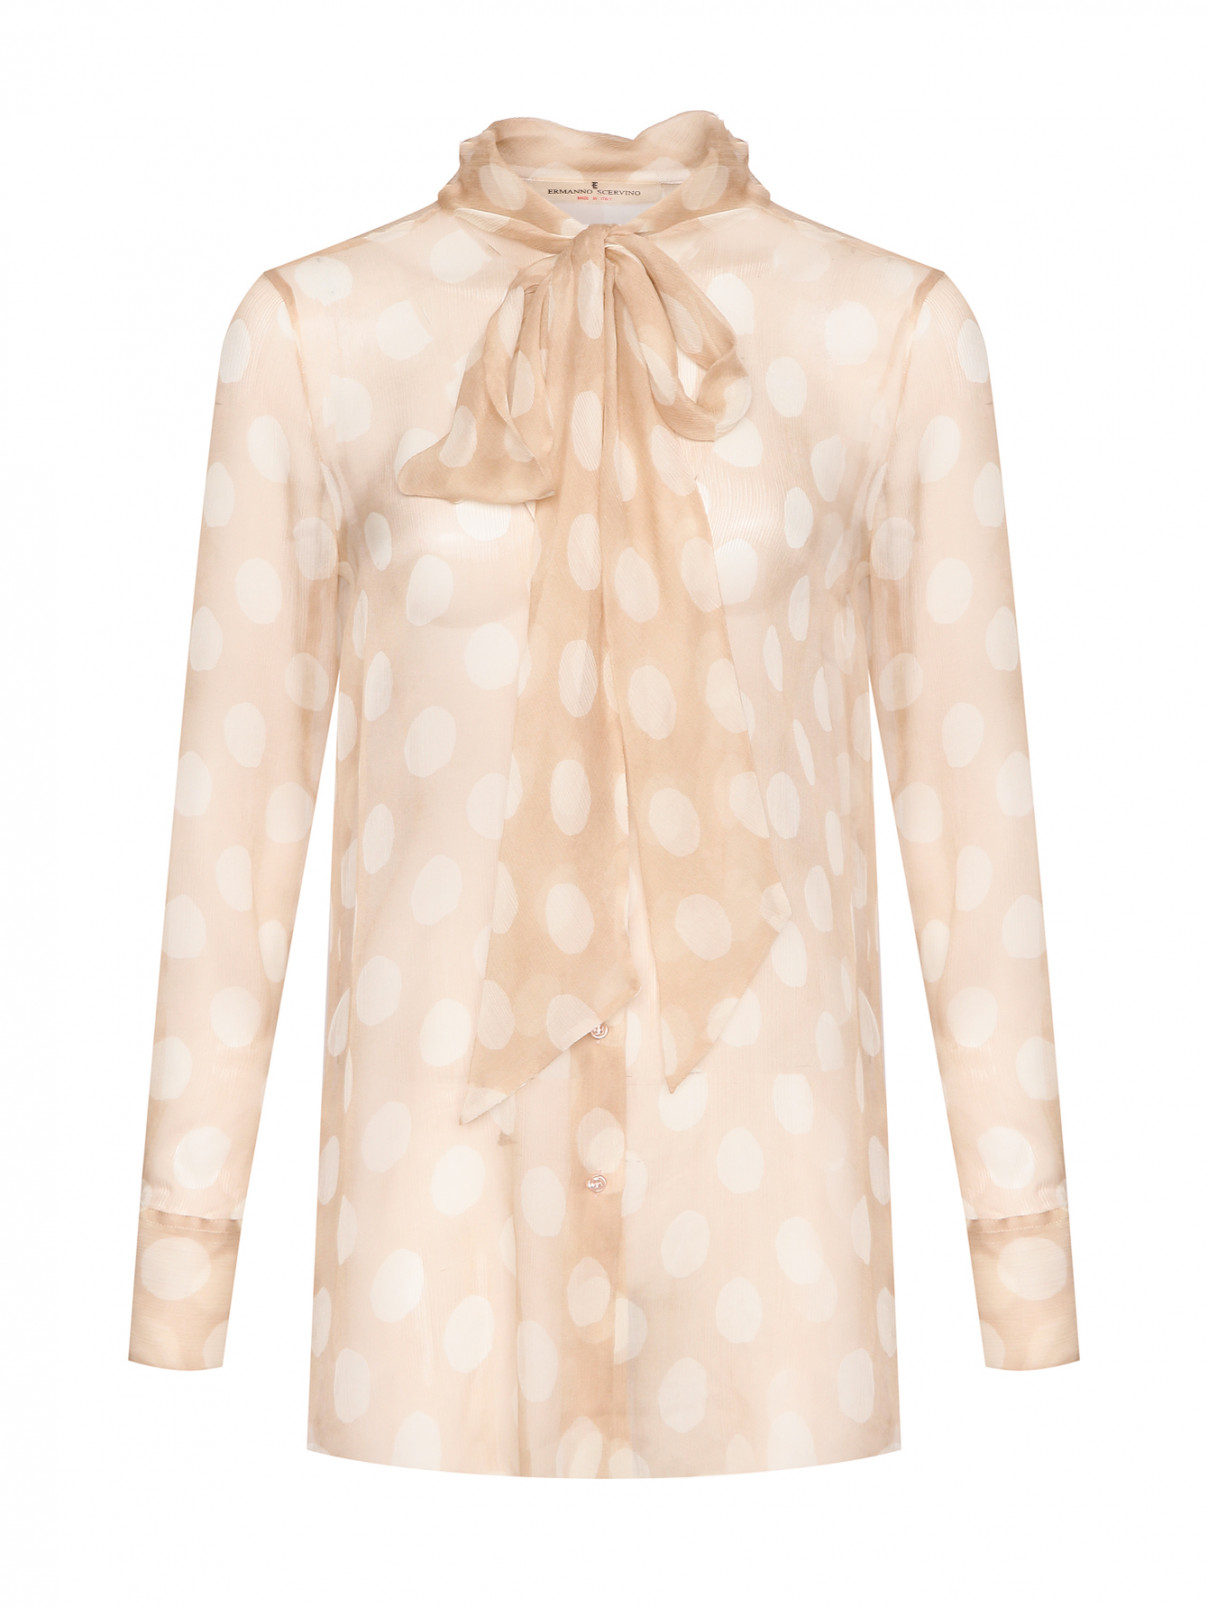 Полупрозрачная блуза из шелка с бантом Ermanno Scervino  –  Общий вид  – Цвет:  Бежевый